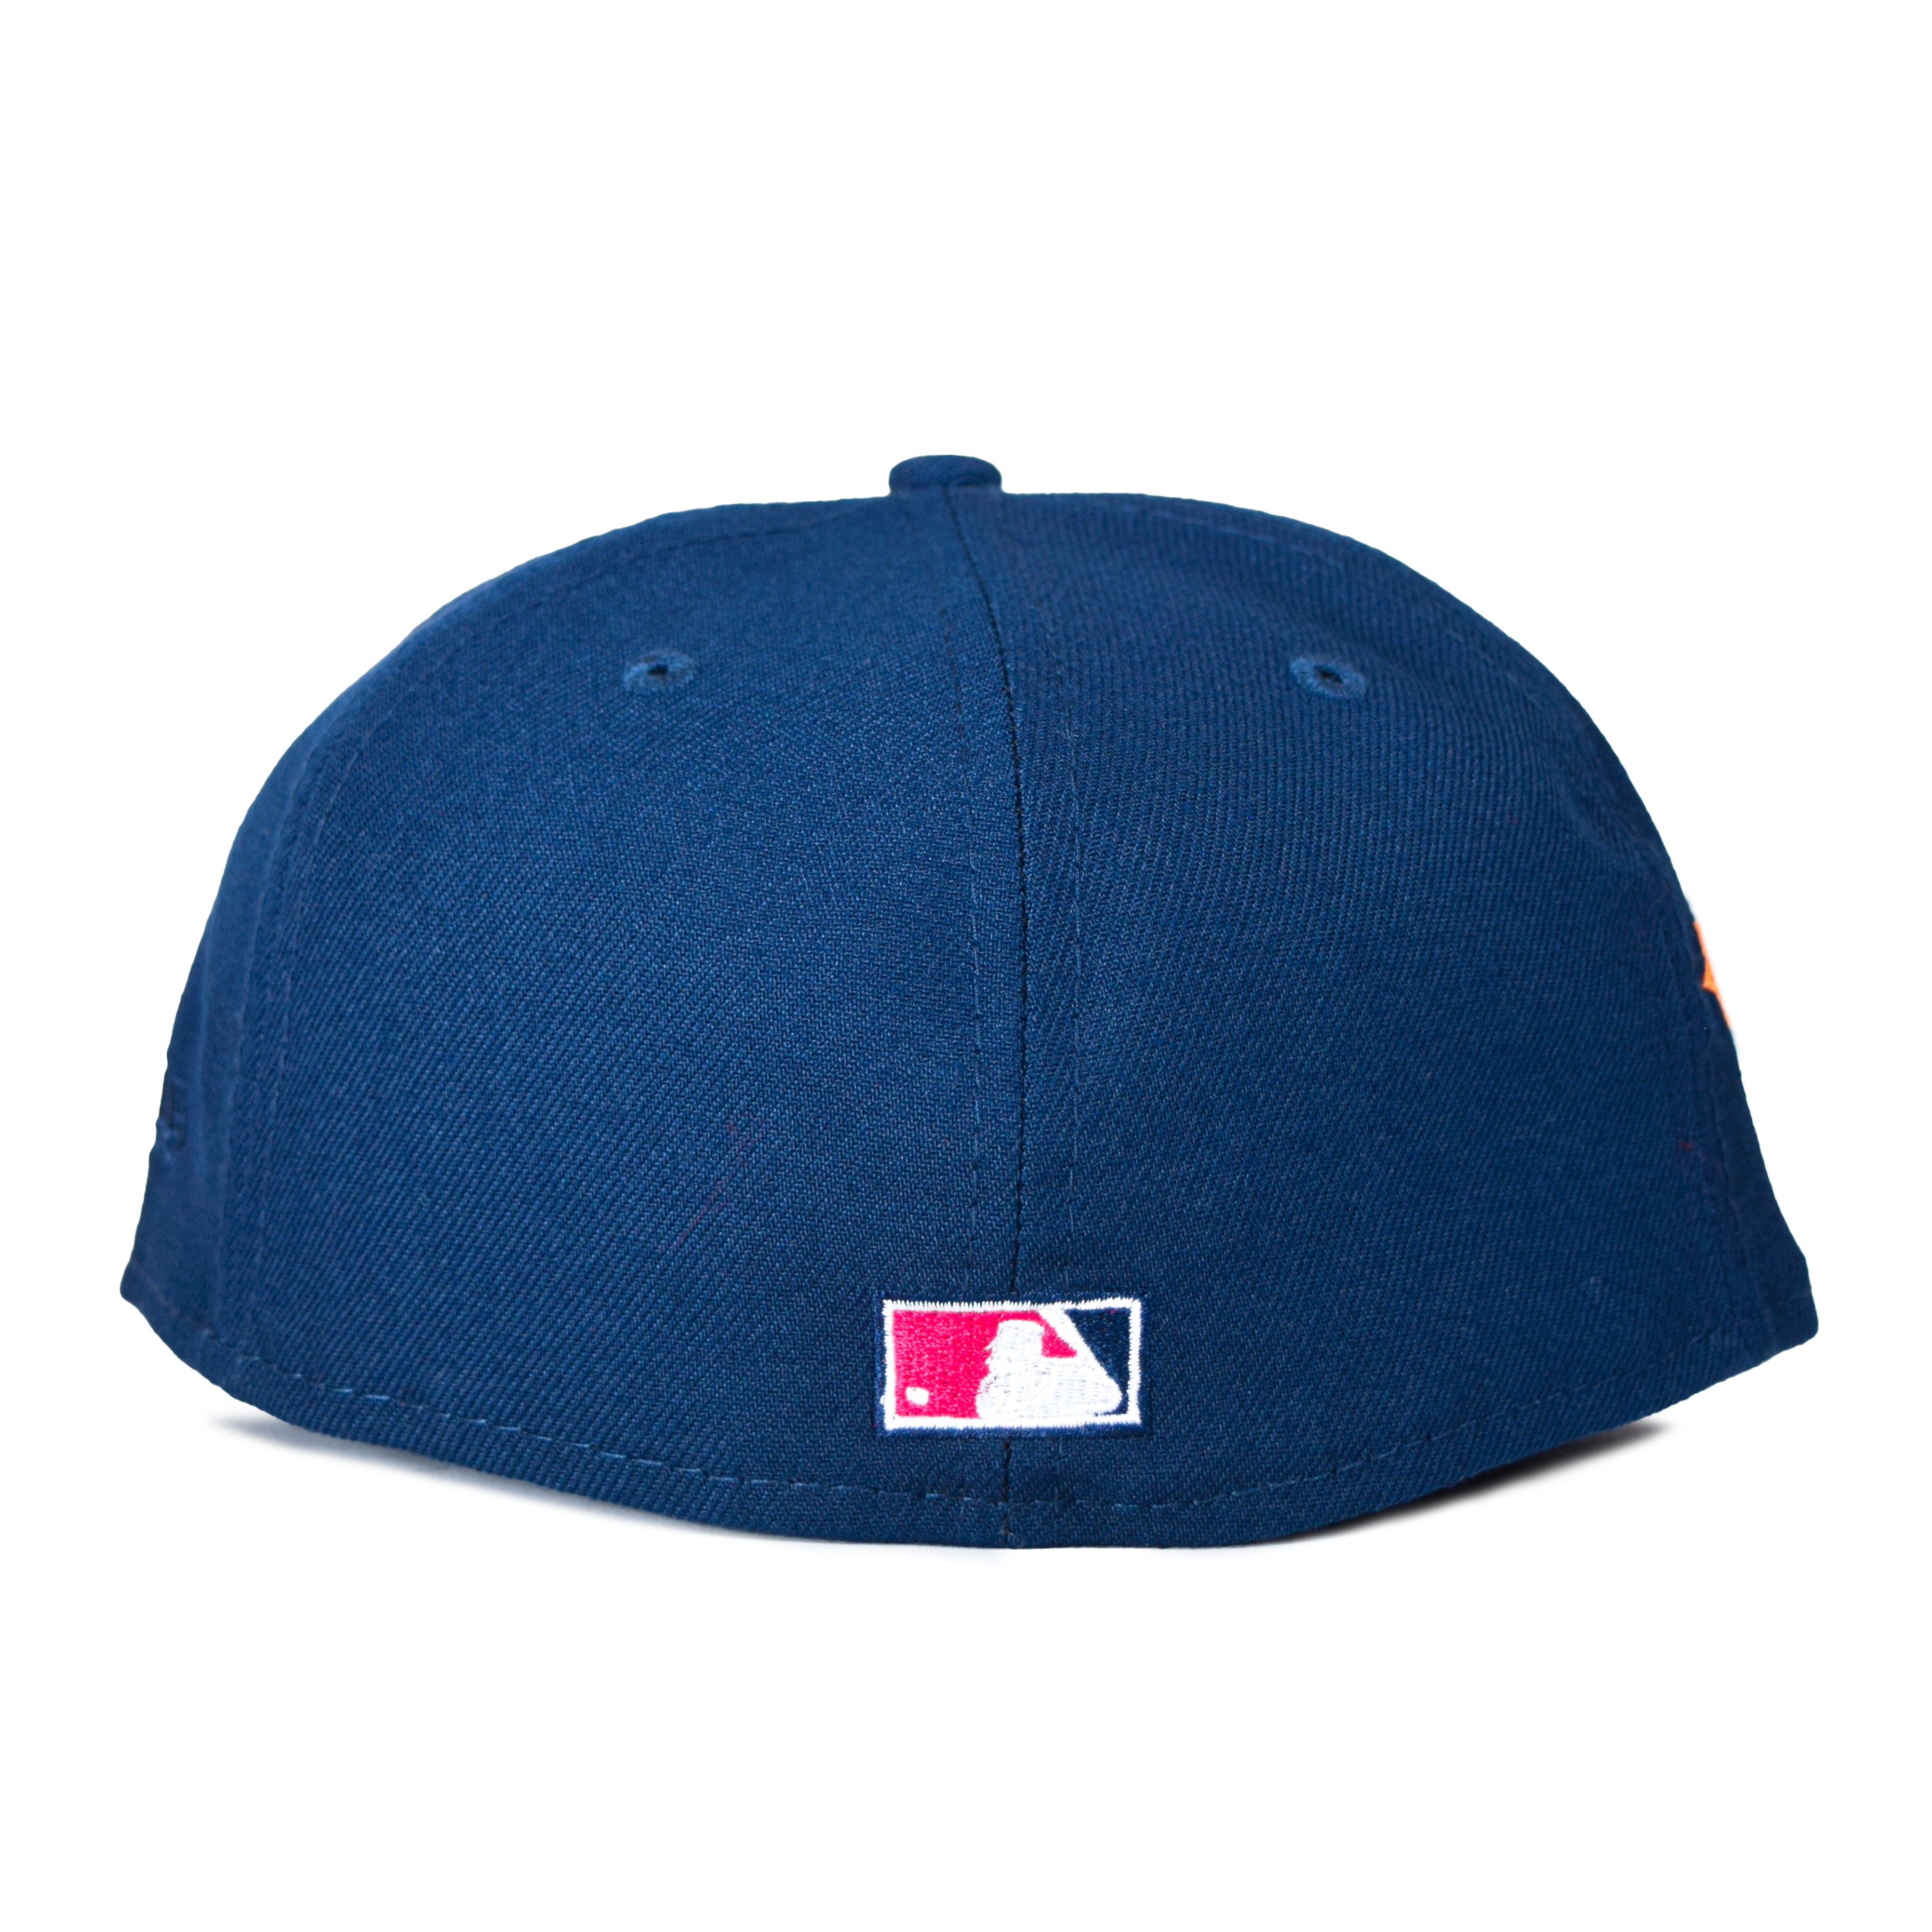 NTWRK - New York Mets Black On Black 9FIFTY Snapback Hat